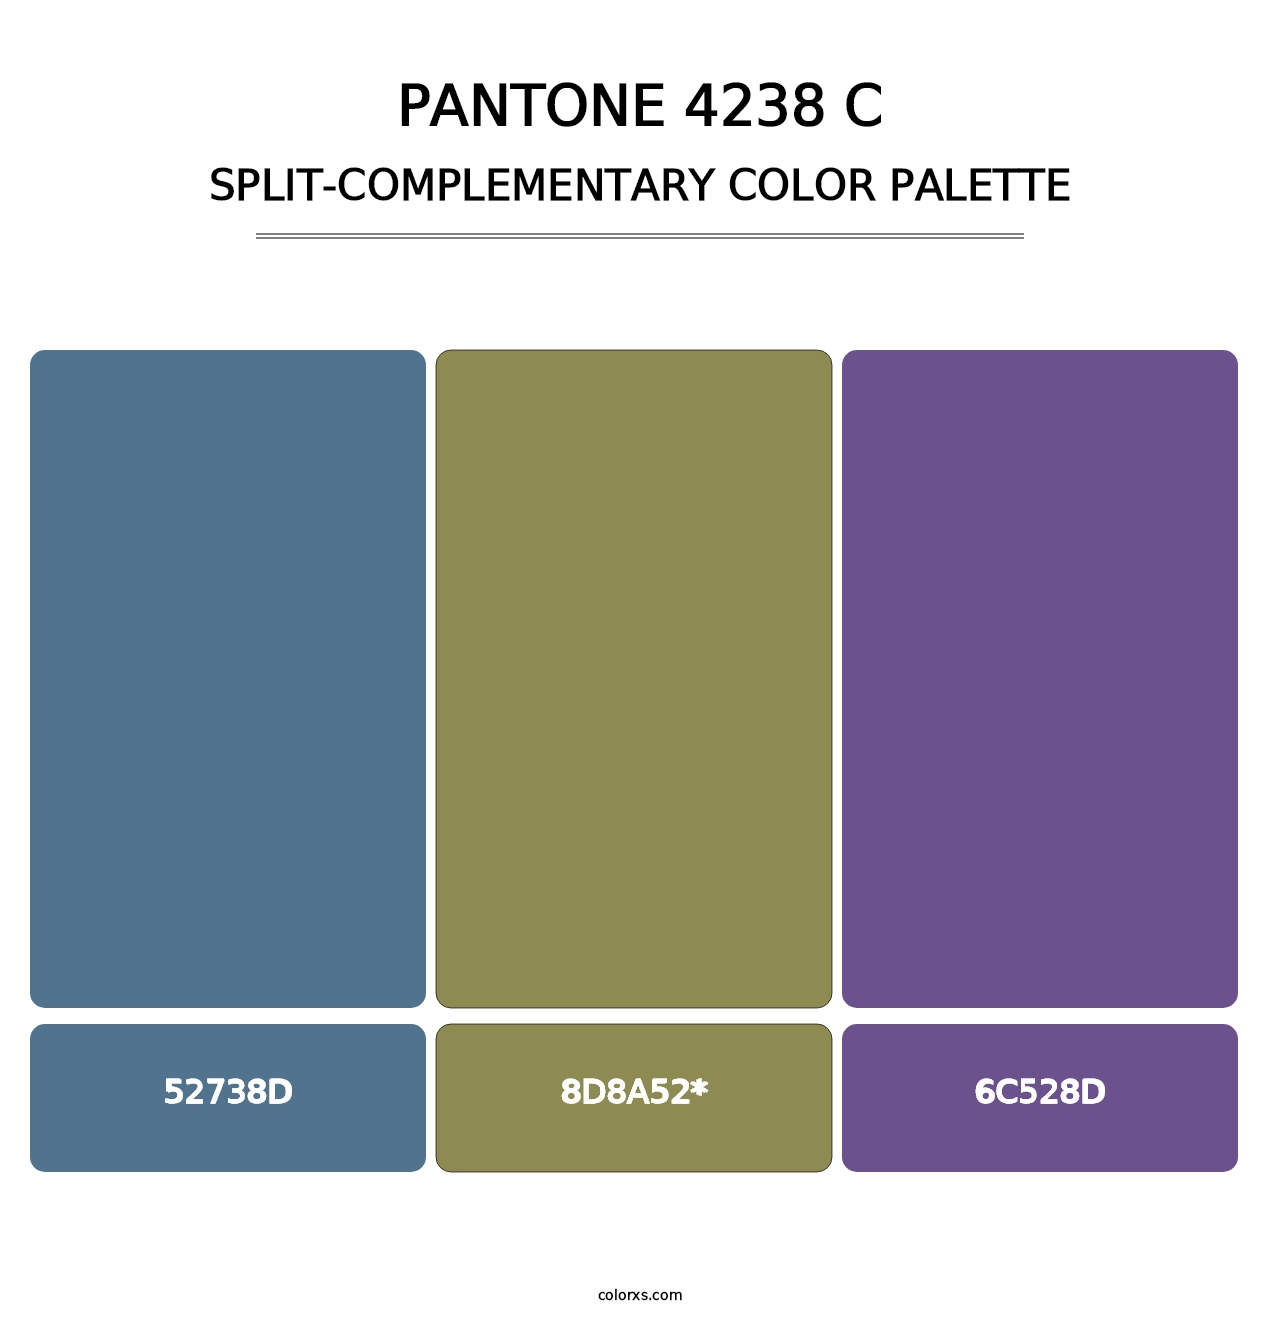 PANTONE 4238 C - Split-Complementary Color Palette